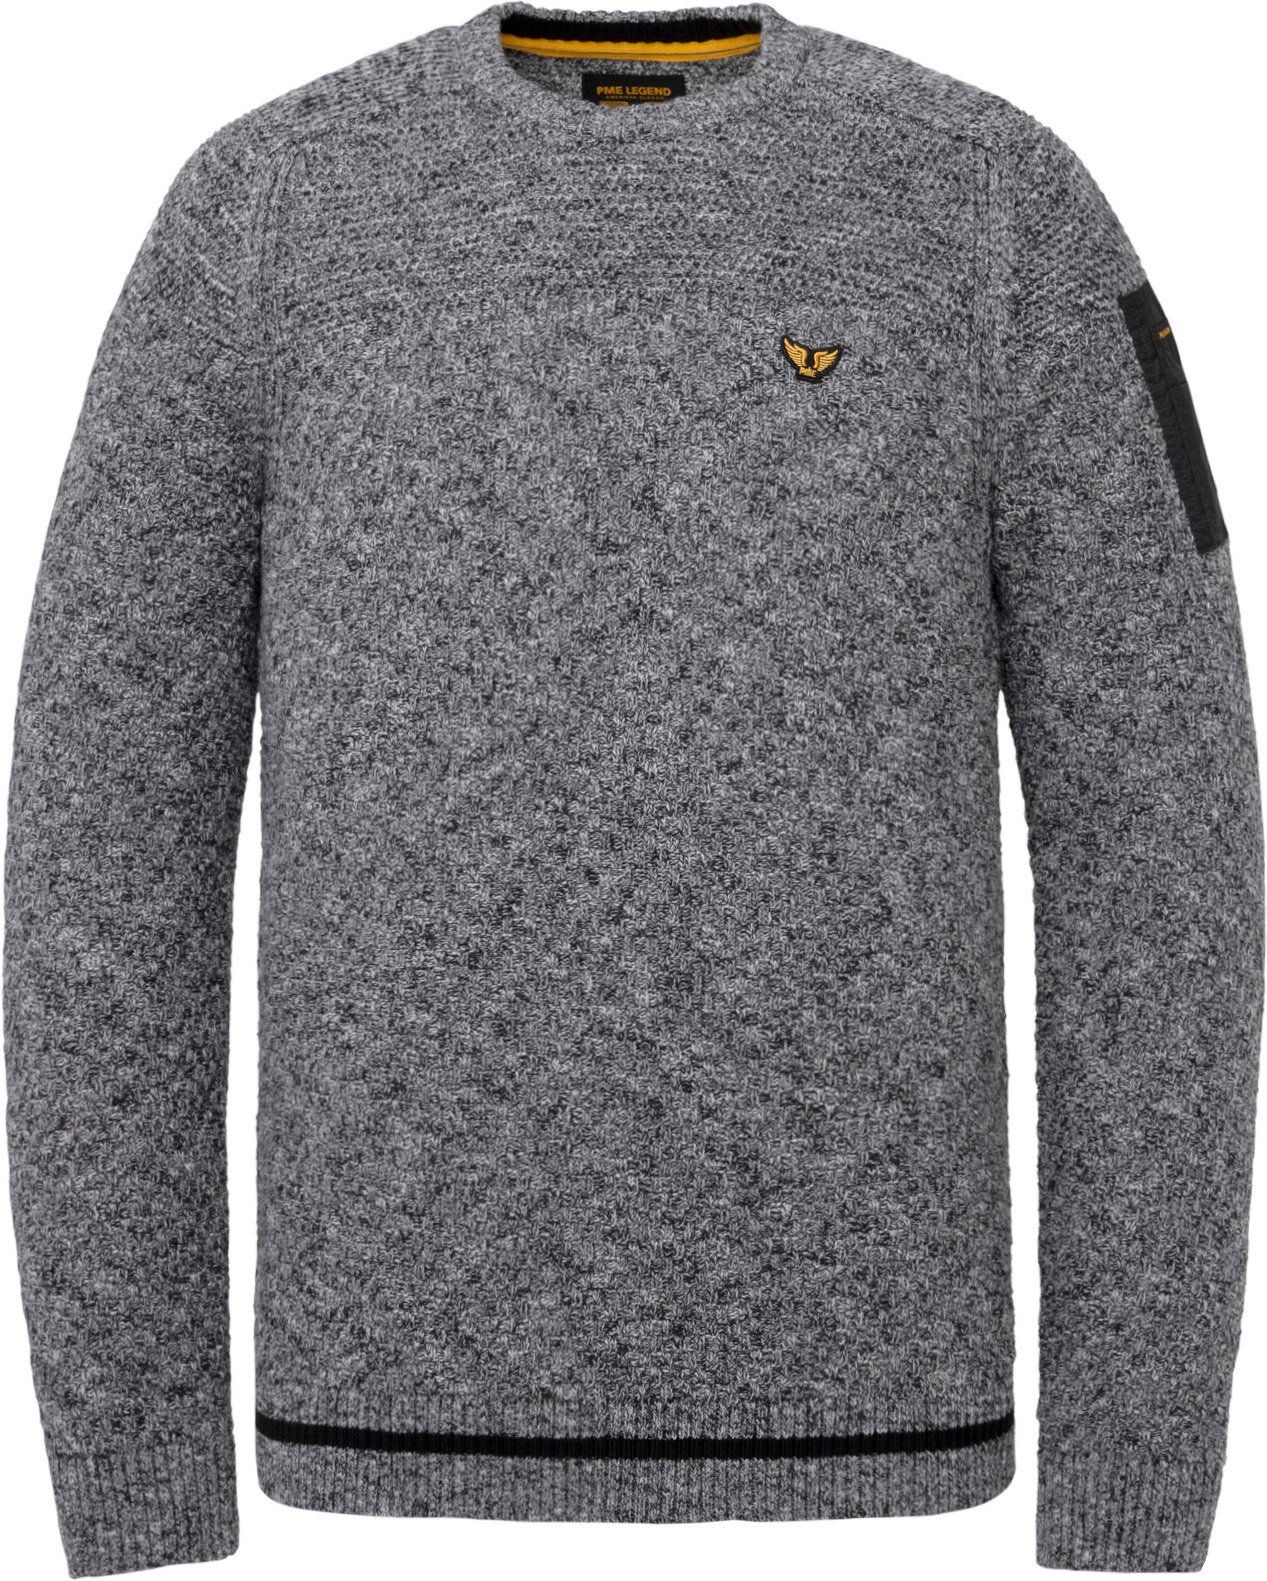 PME Legend Sweater Mouline Knitted Dark Dark Grey Grey size XL